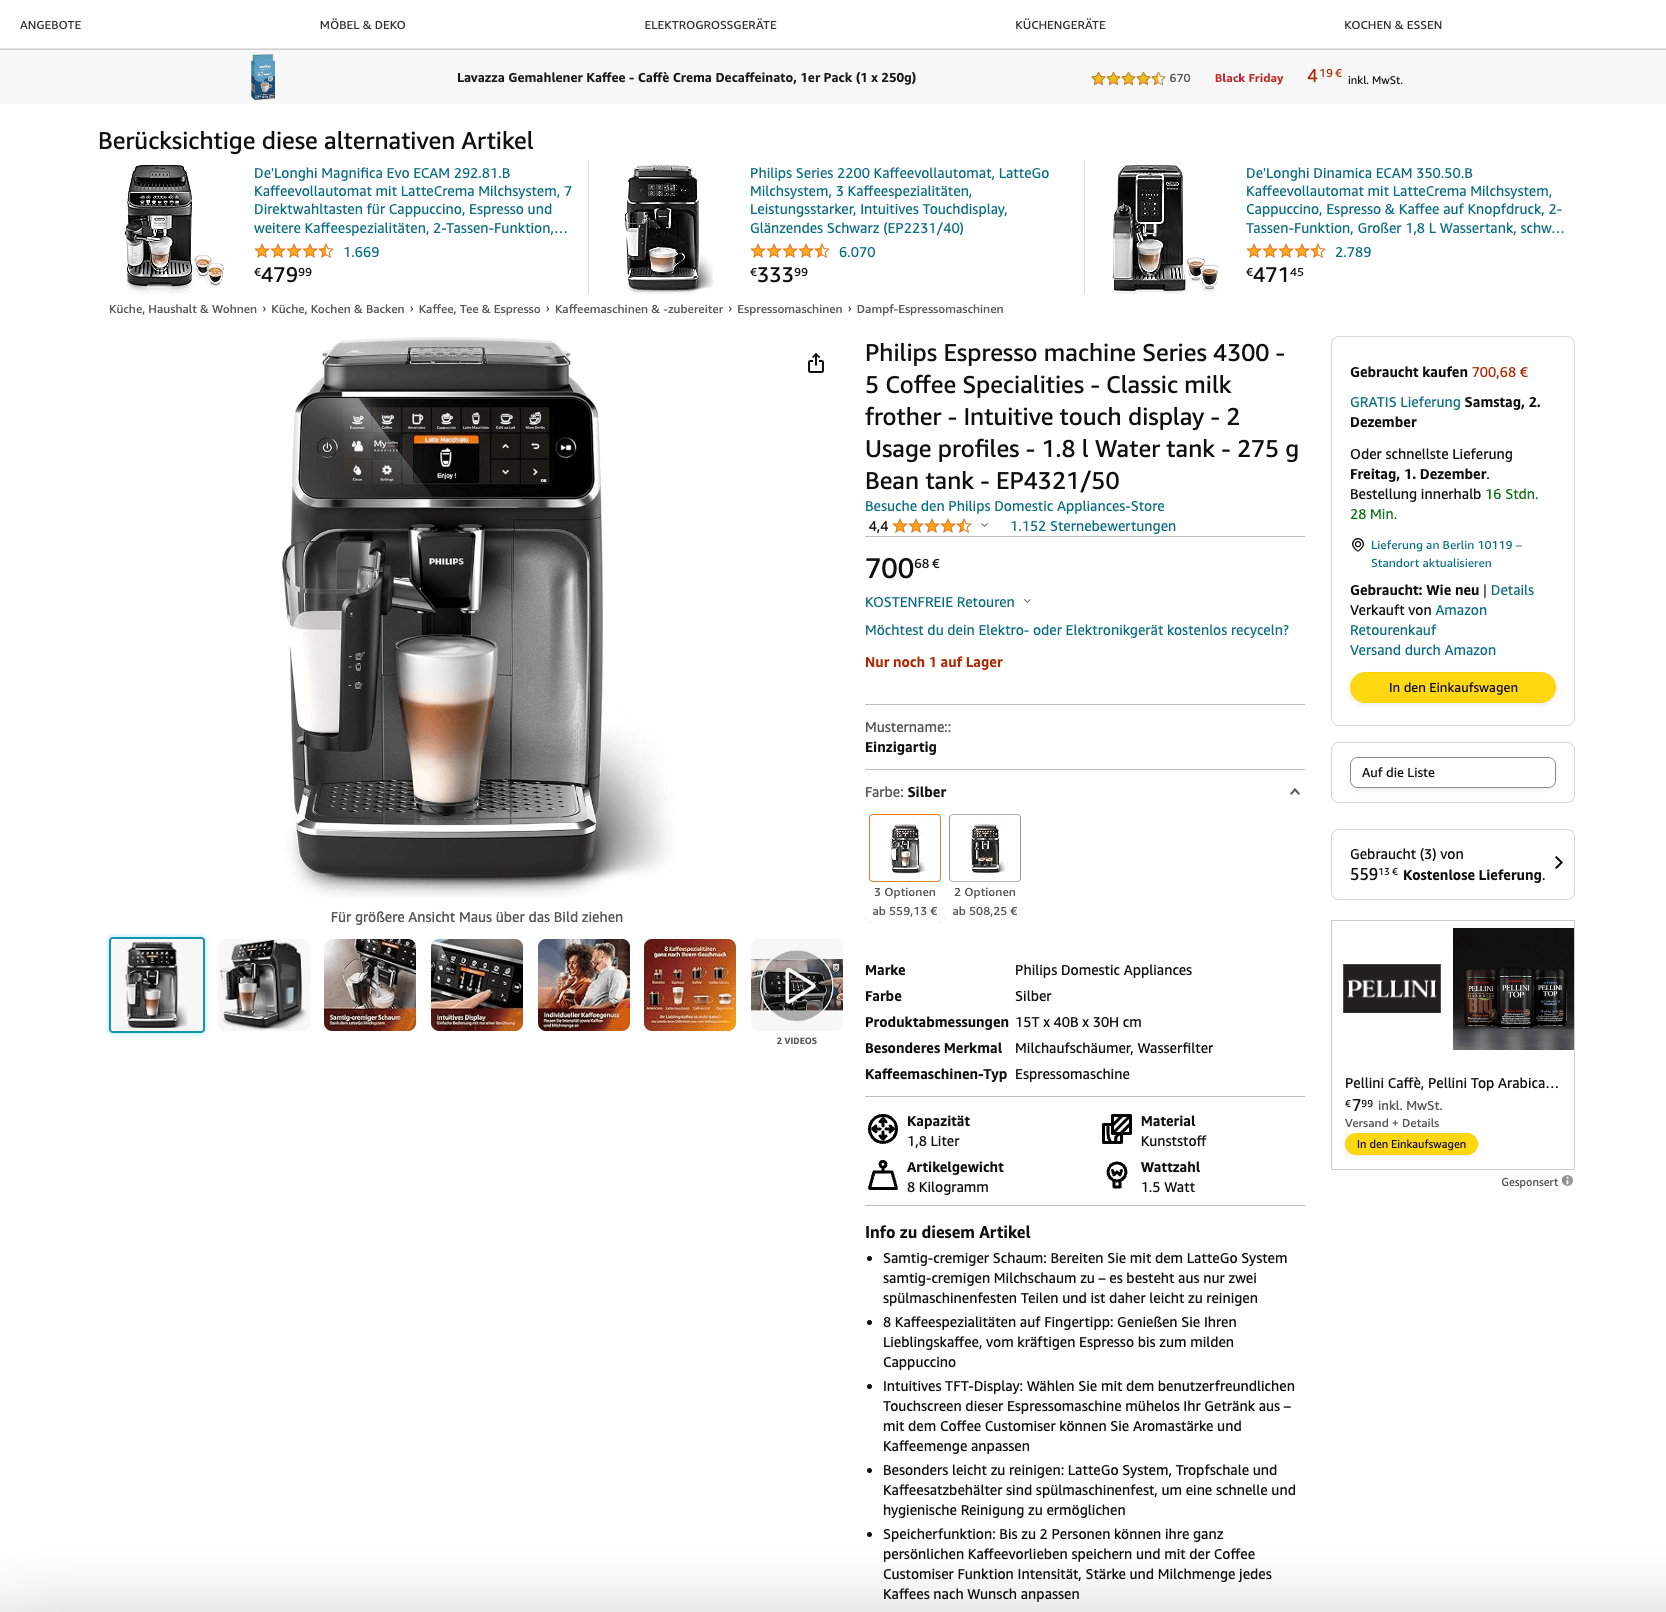 Aufbau der deutschen Amazon-Produktseite